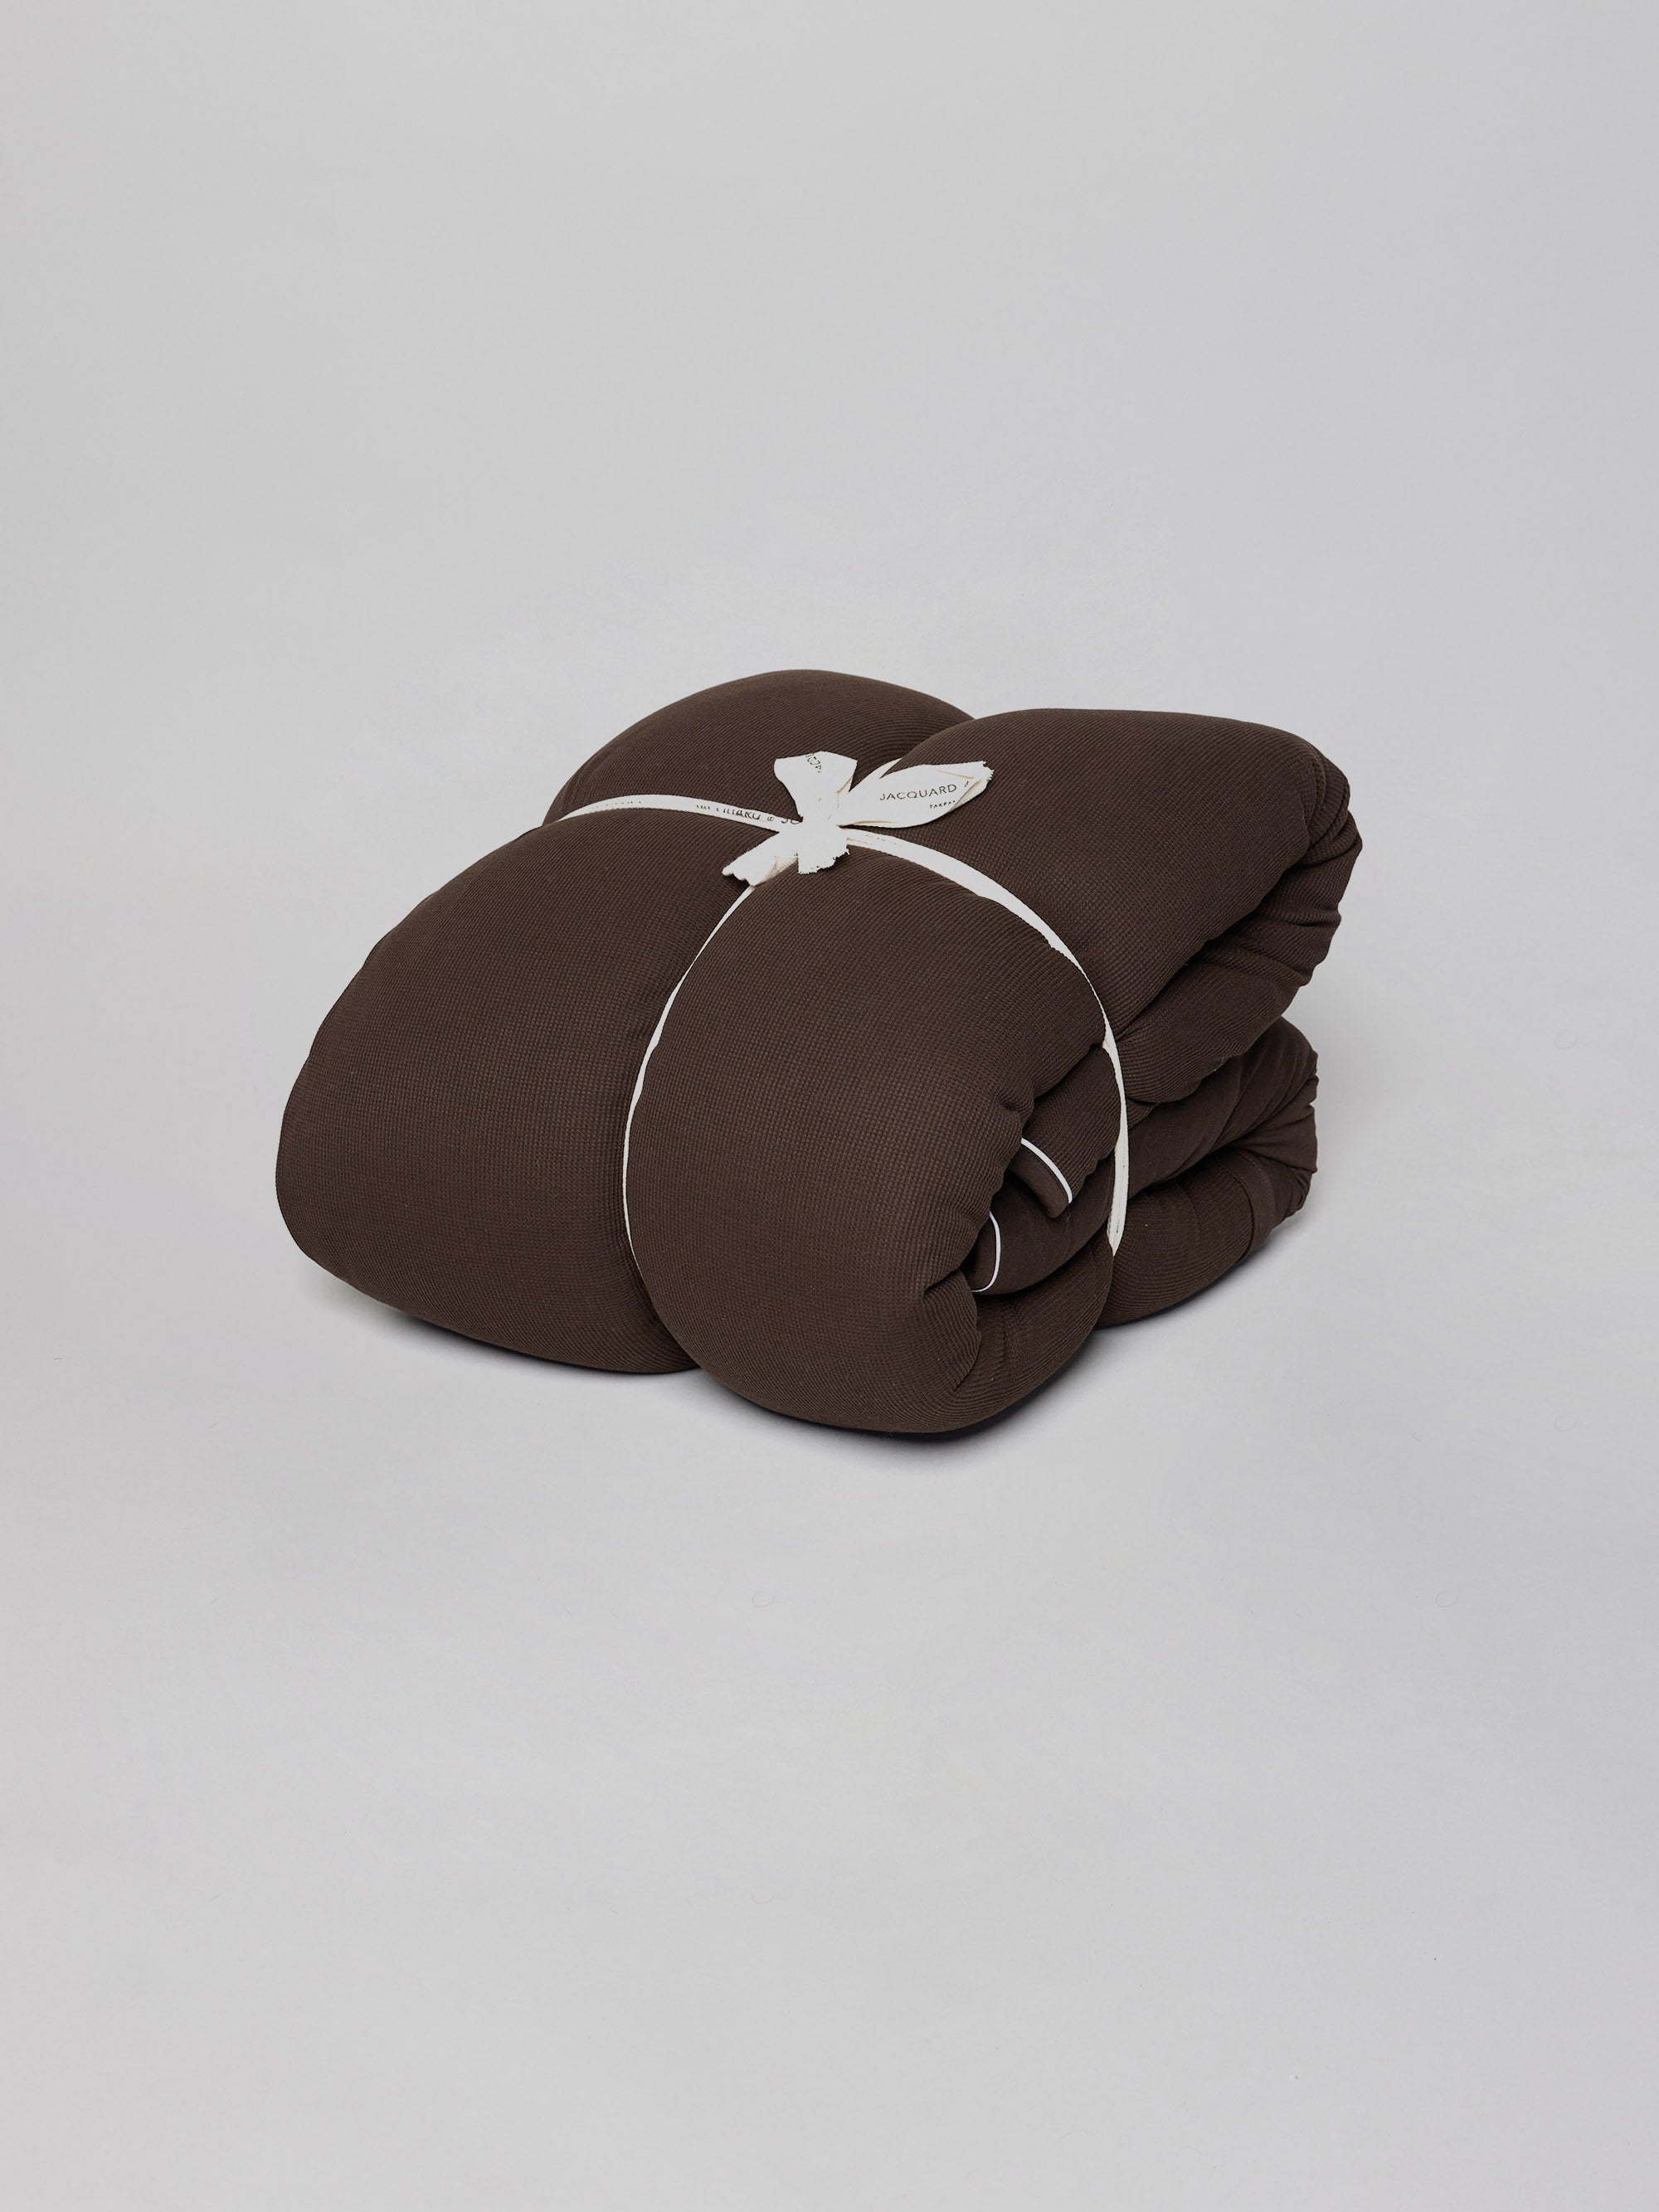 שמיכה למיטה הוליפייבר בצבע חום על רקע אפור